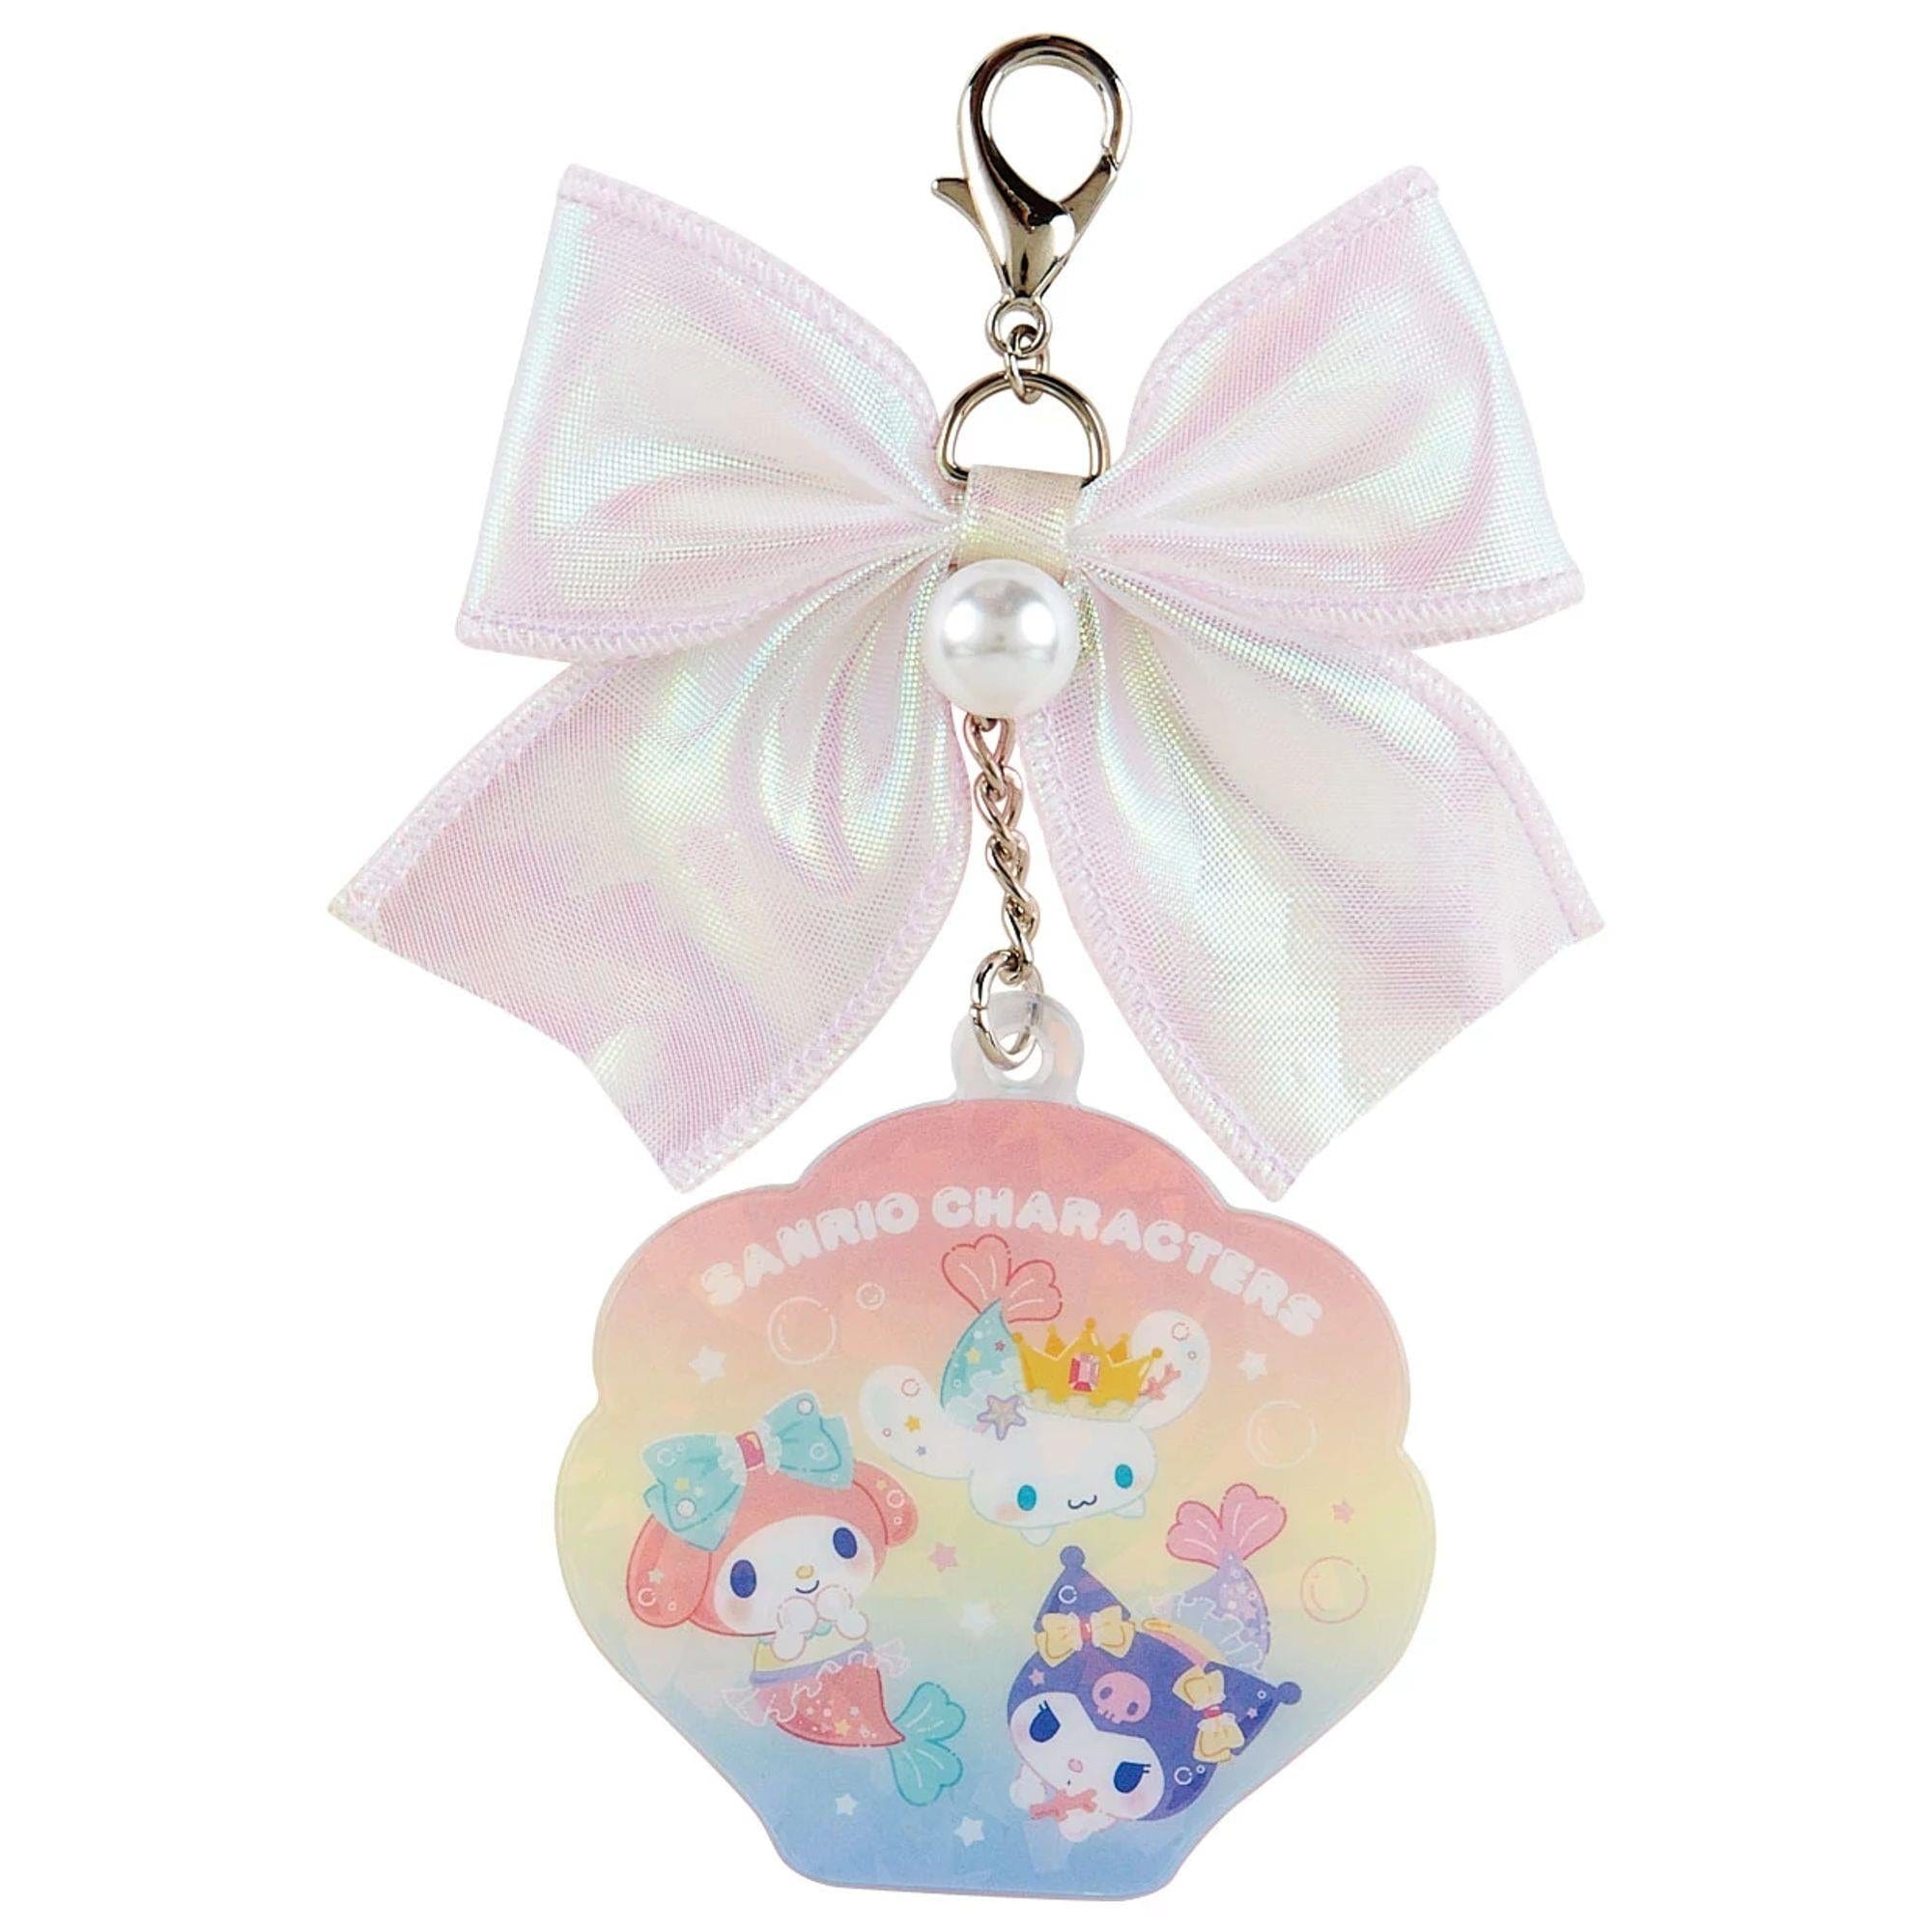 Enesco Sanrio Mermaids Acrylic Keychain Kawaii Gifts 4550337181904